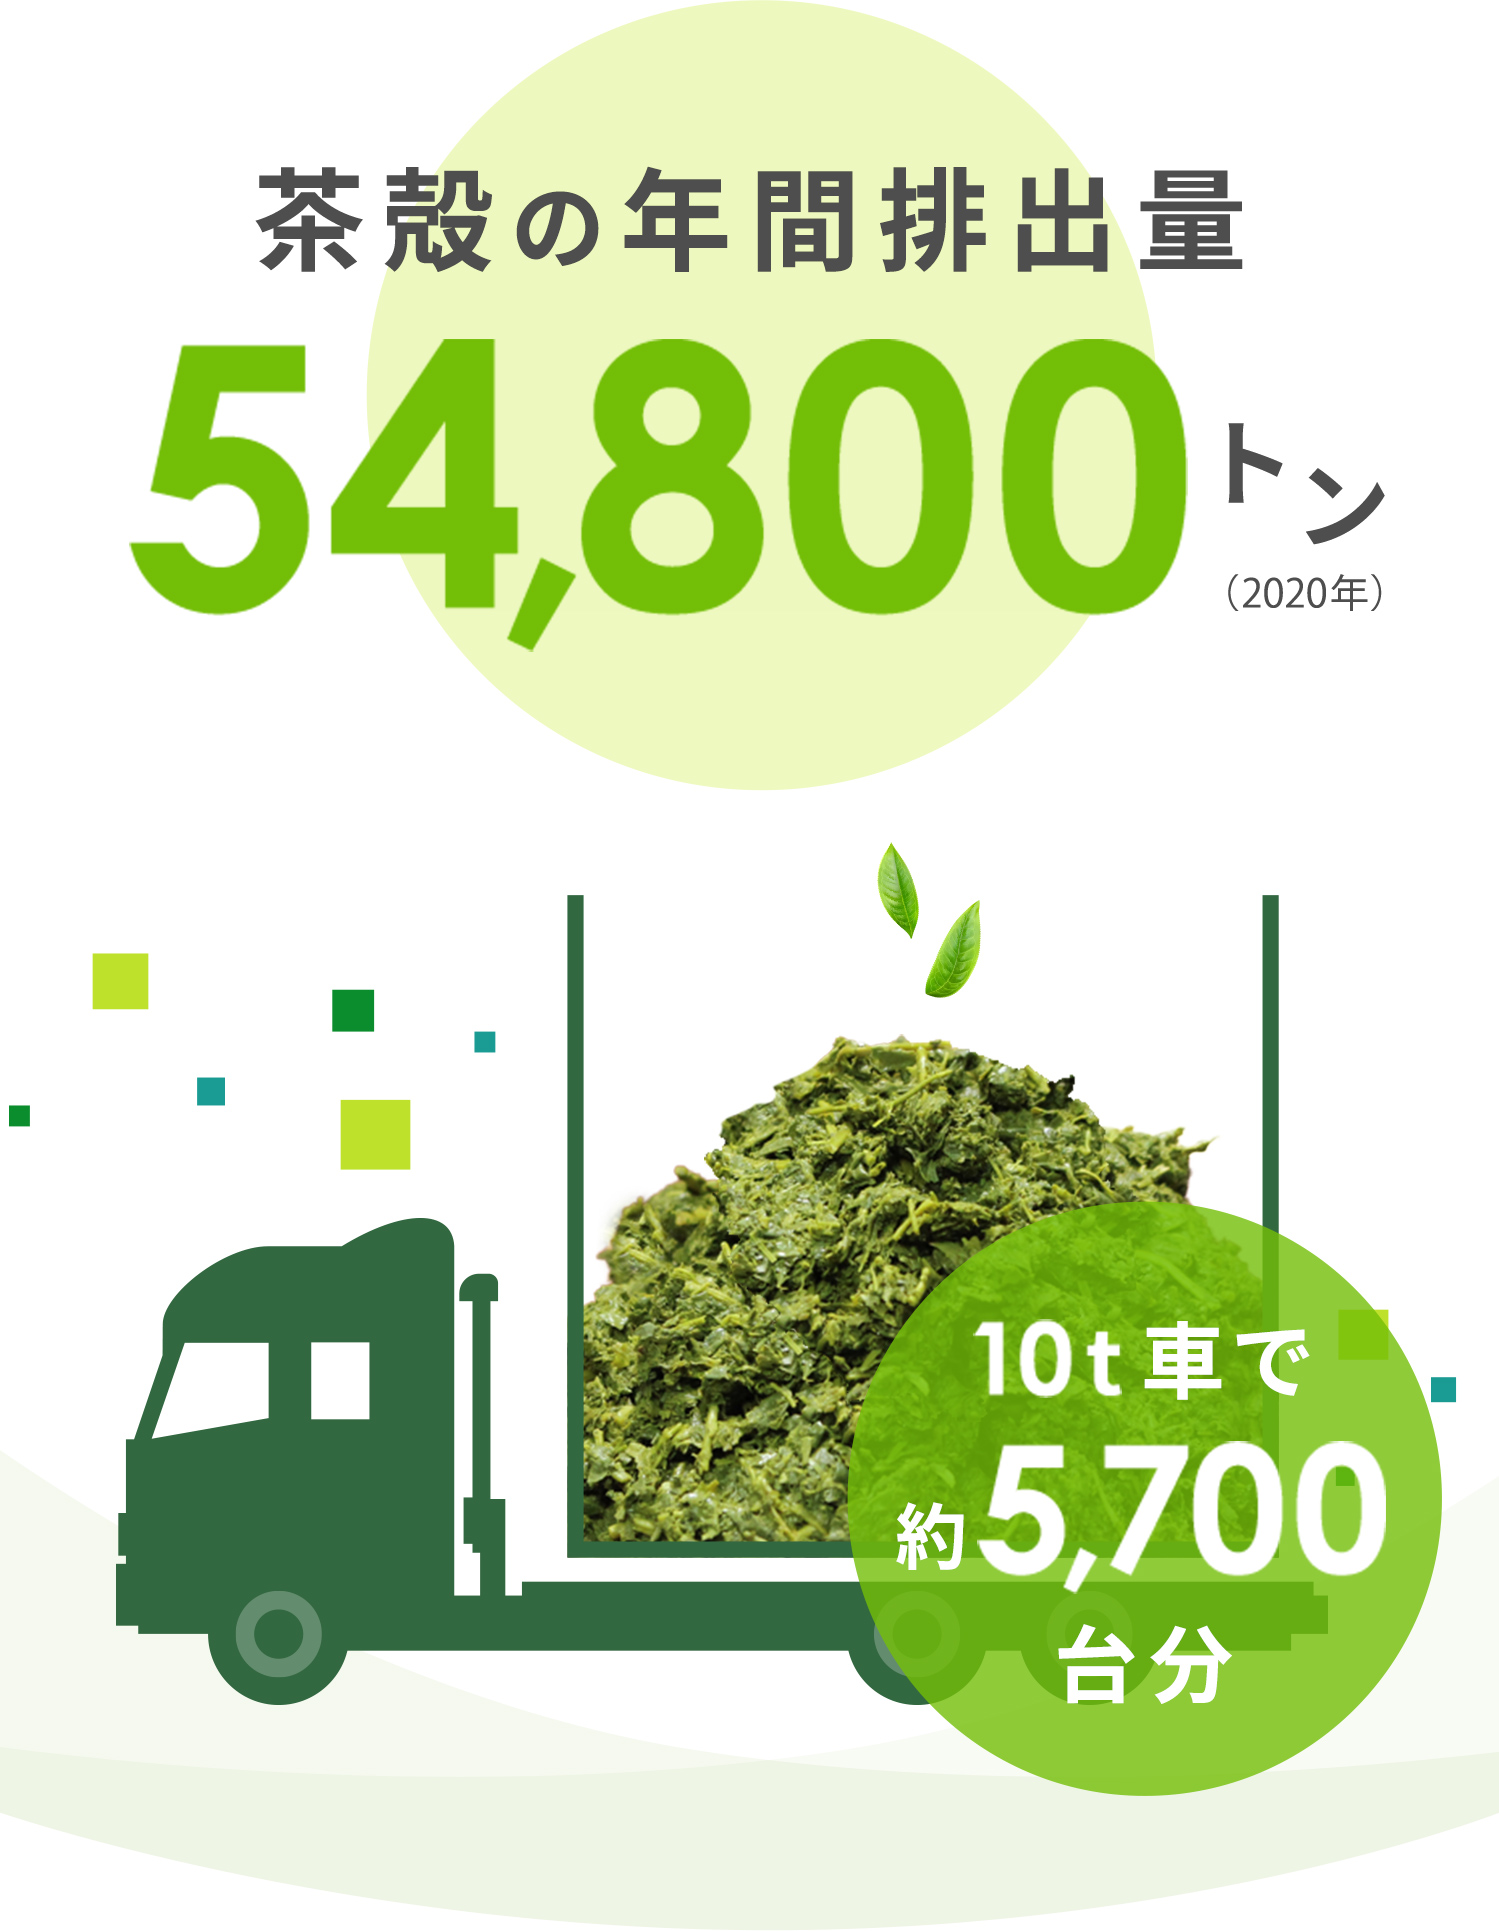 茶殻生産量63,200トン